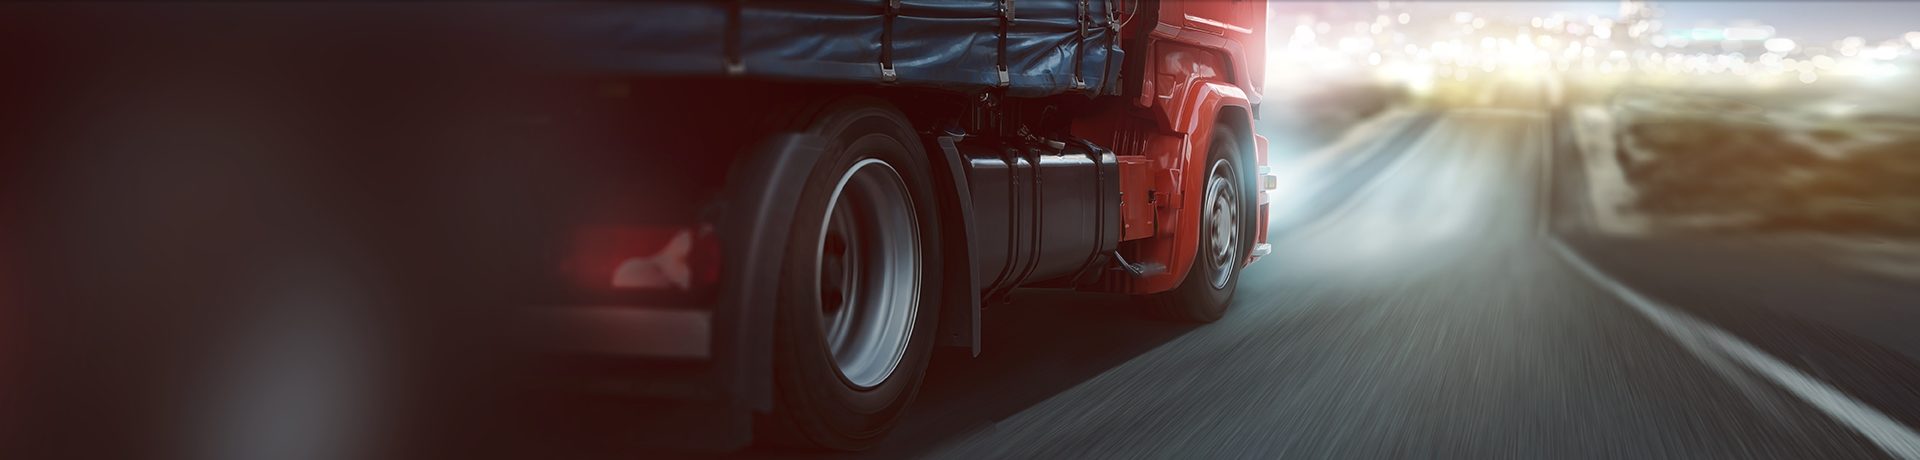 Ubezpieczenie GAP samochodów ciężarowych